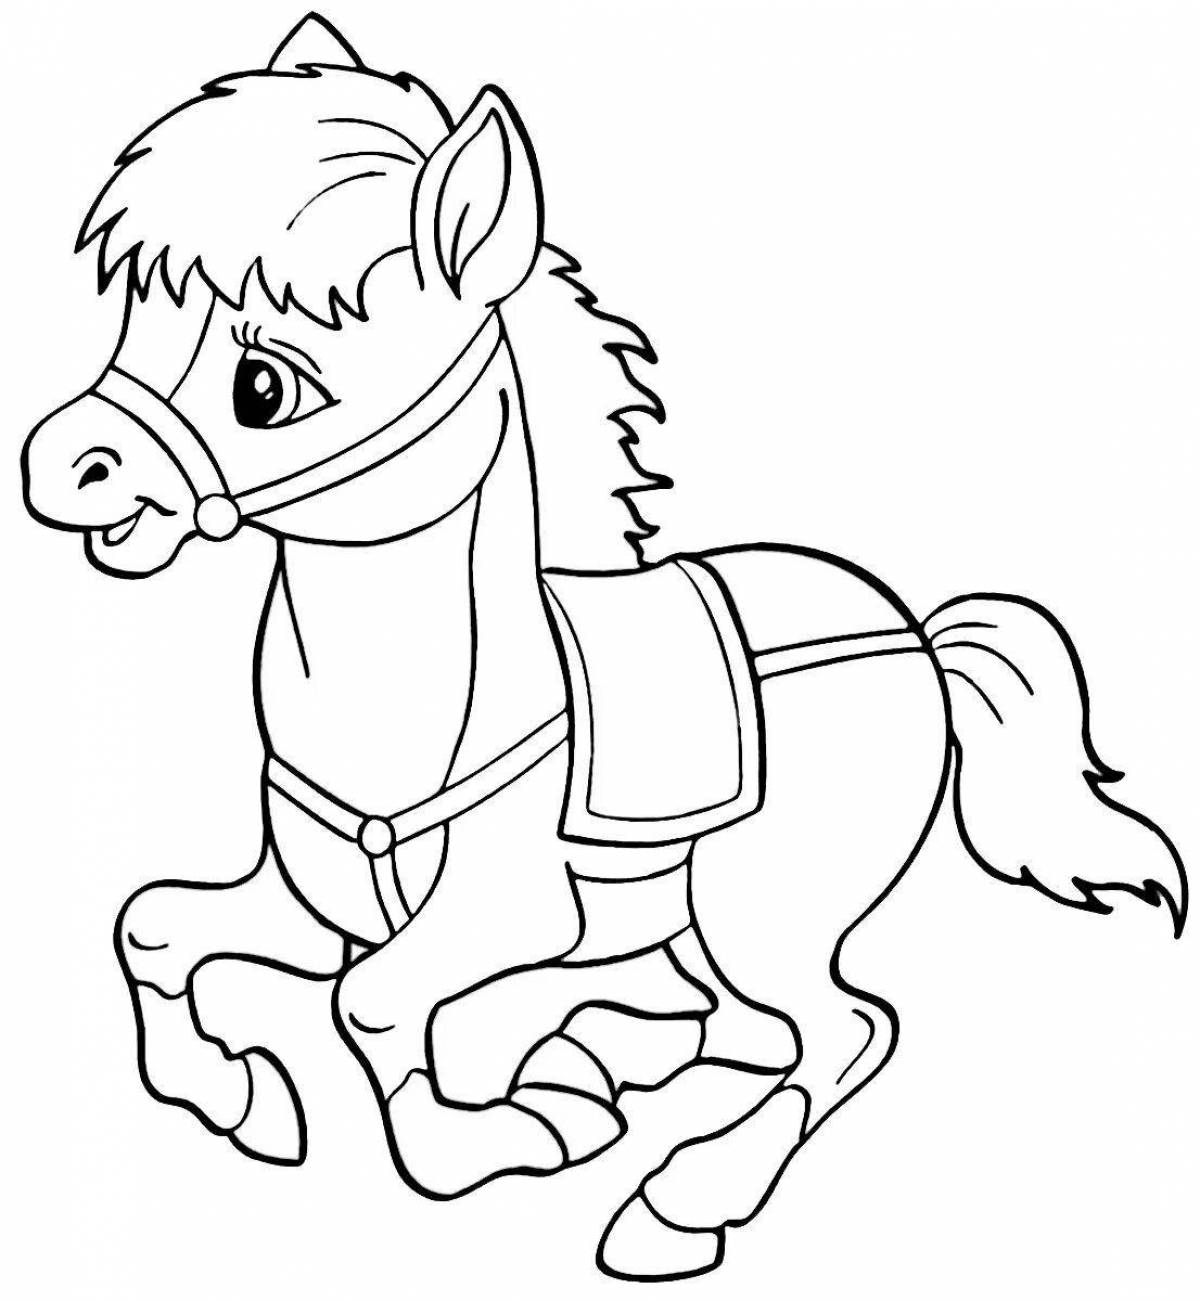 Веселая лошадка раскраска для детей 2-3 лет